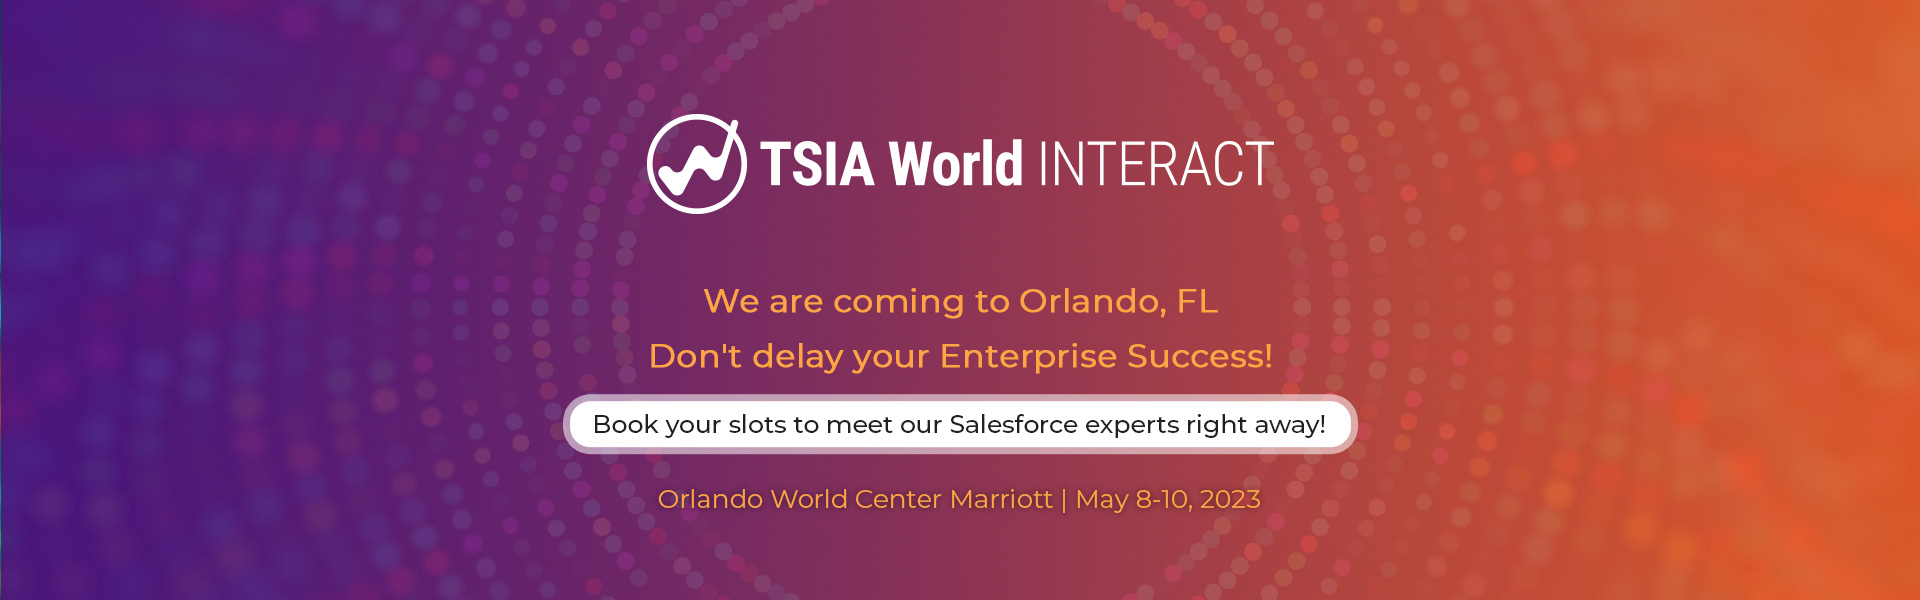 TSIA World Interact